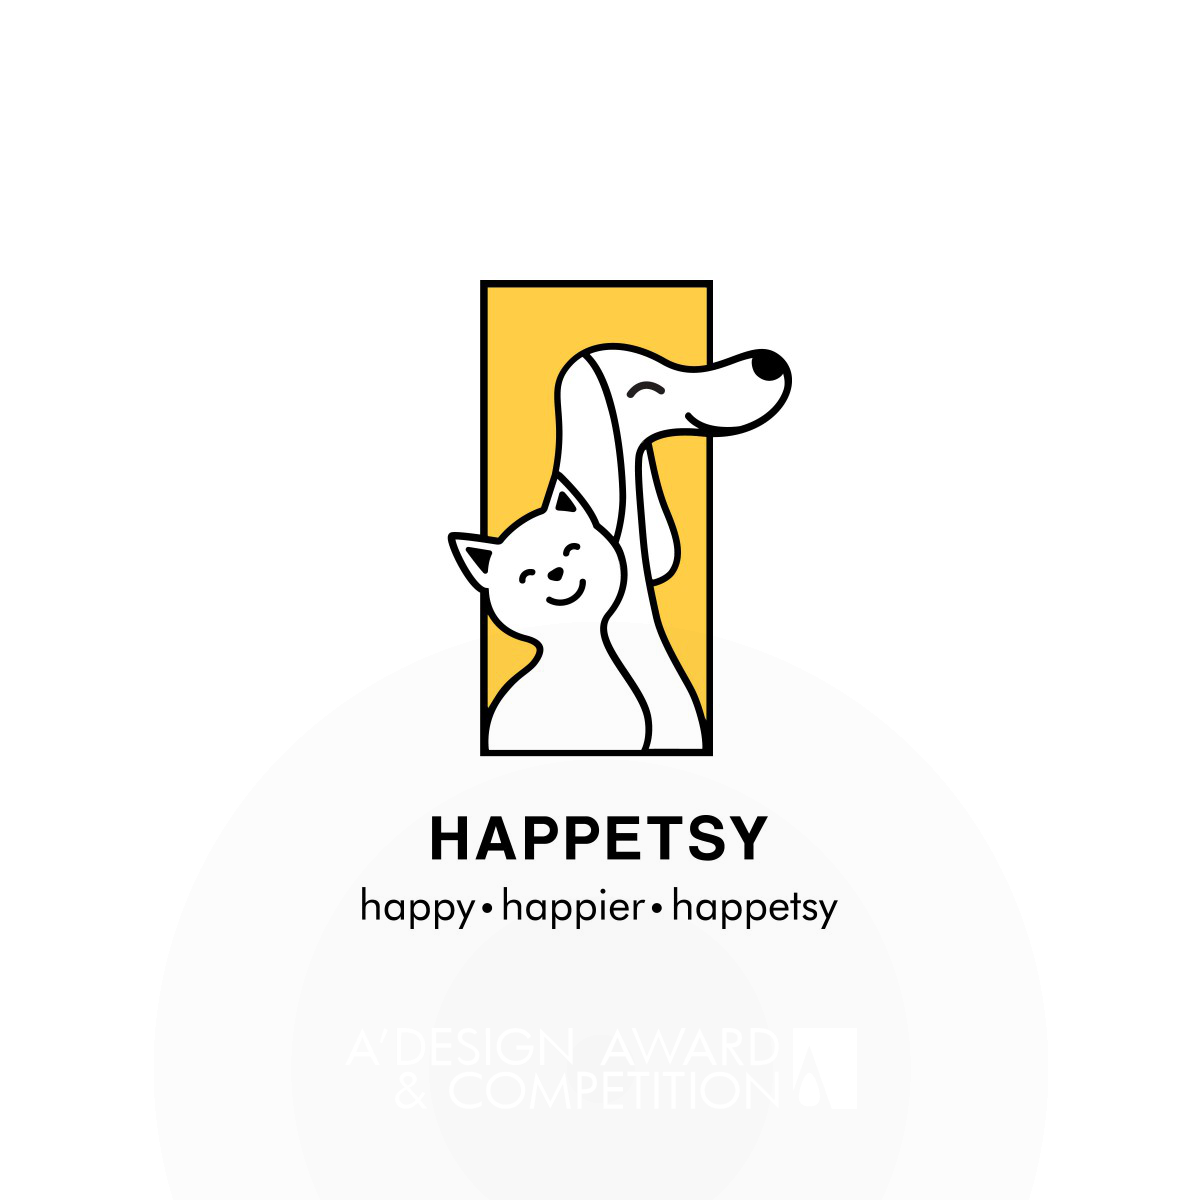 행복을 디자인하는 브랜드, 'Happetsy'